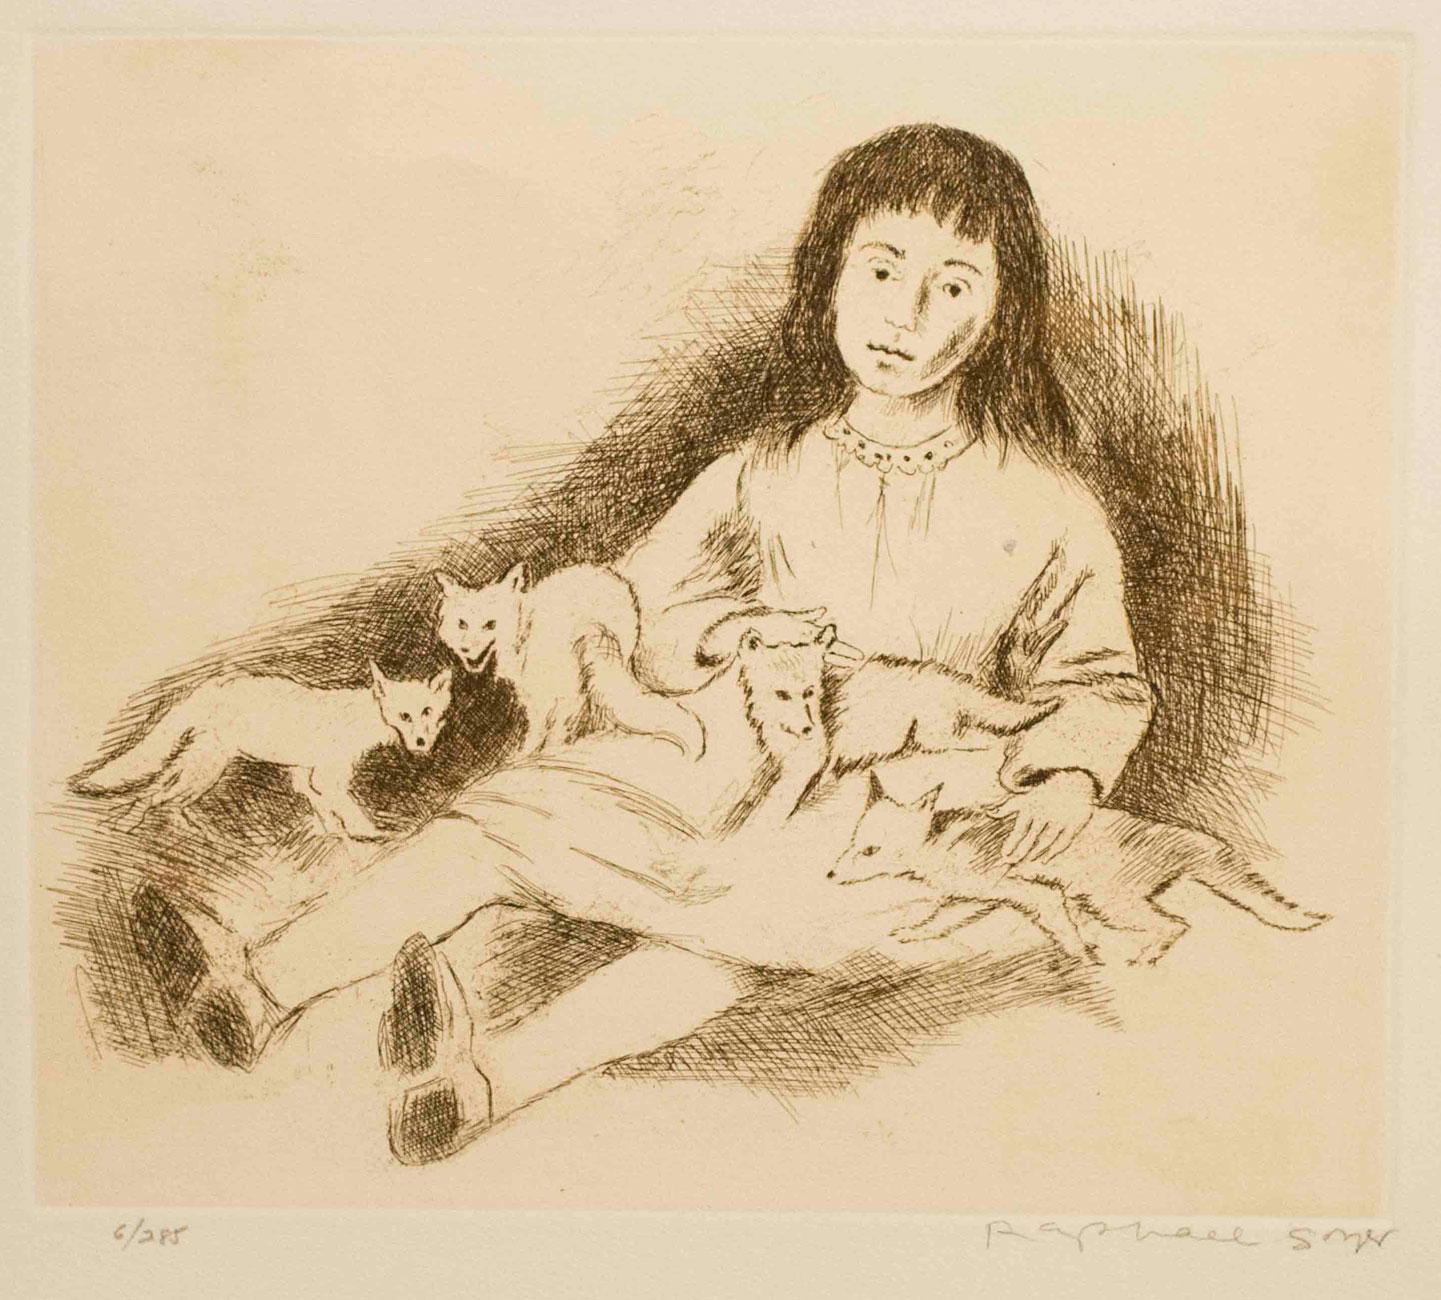 Jeune fille avec des renards - Print de Raphael Soyer